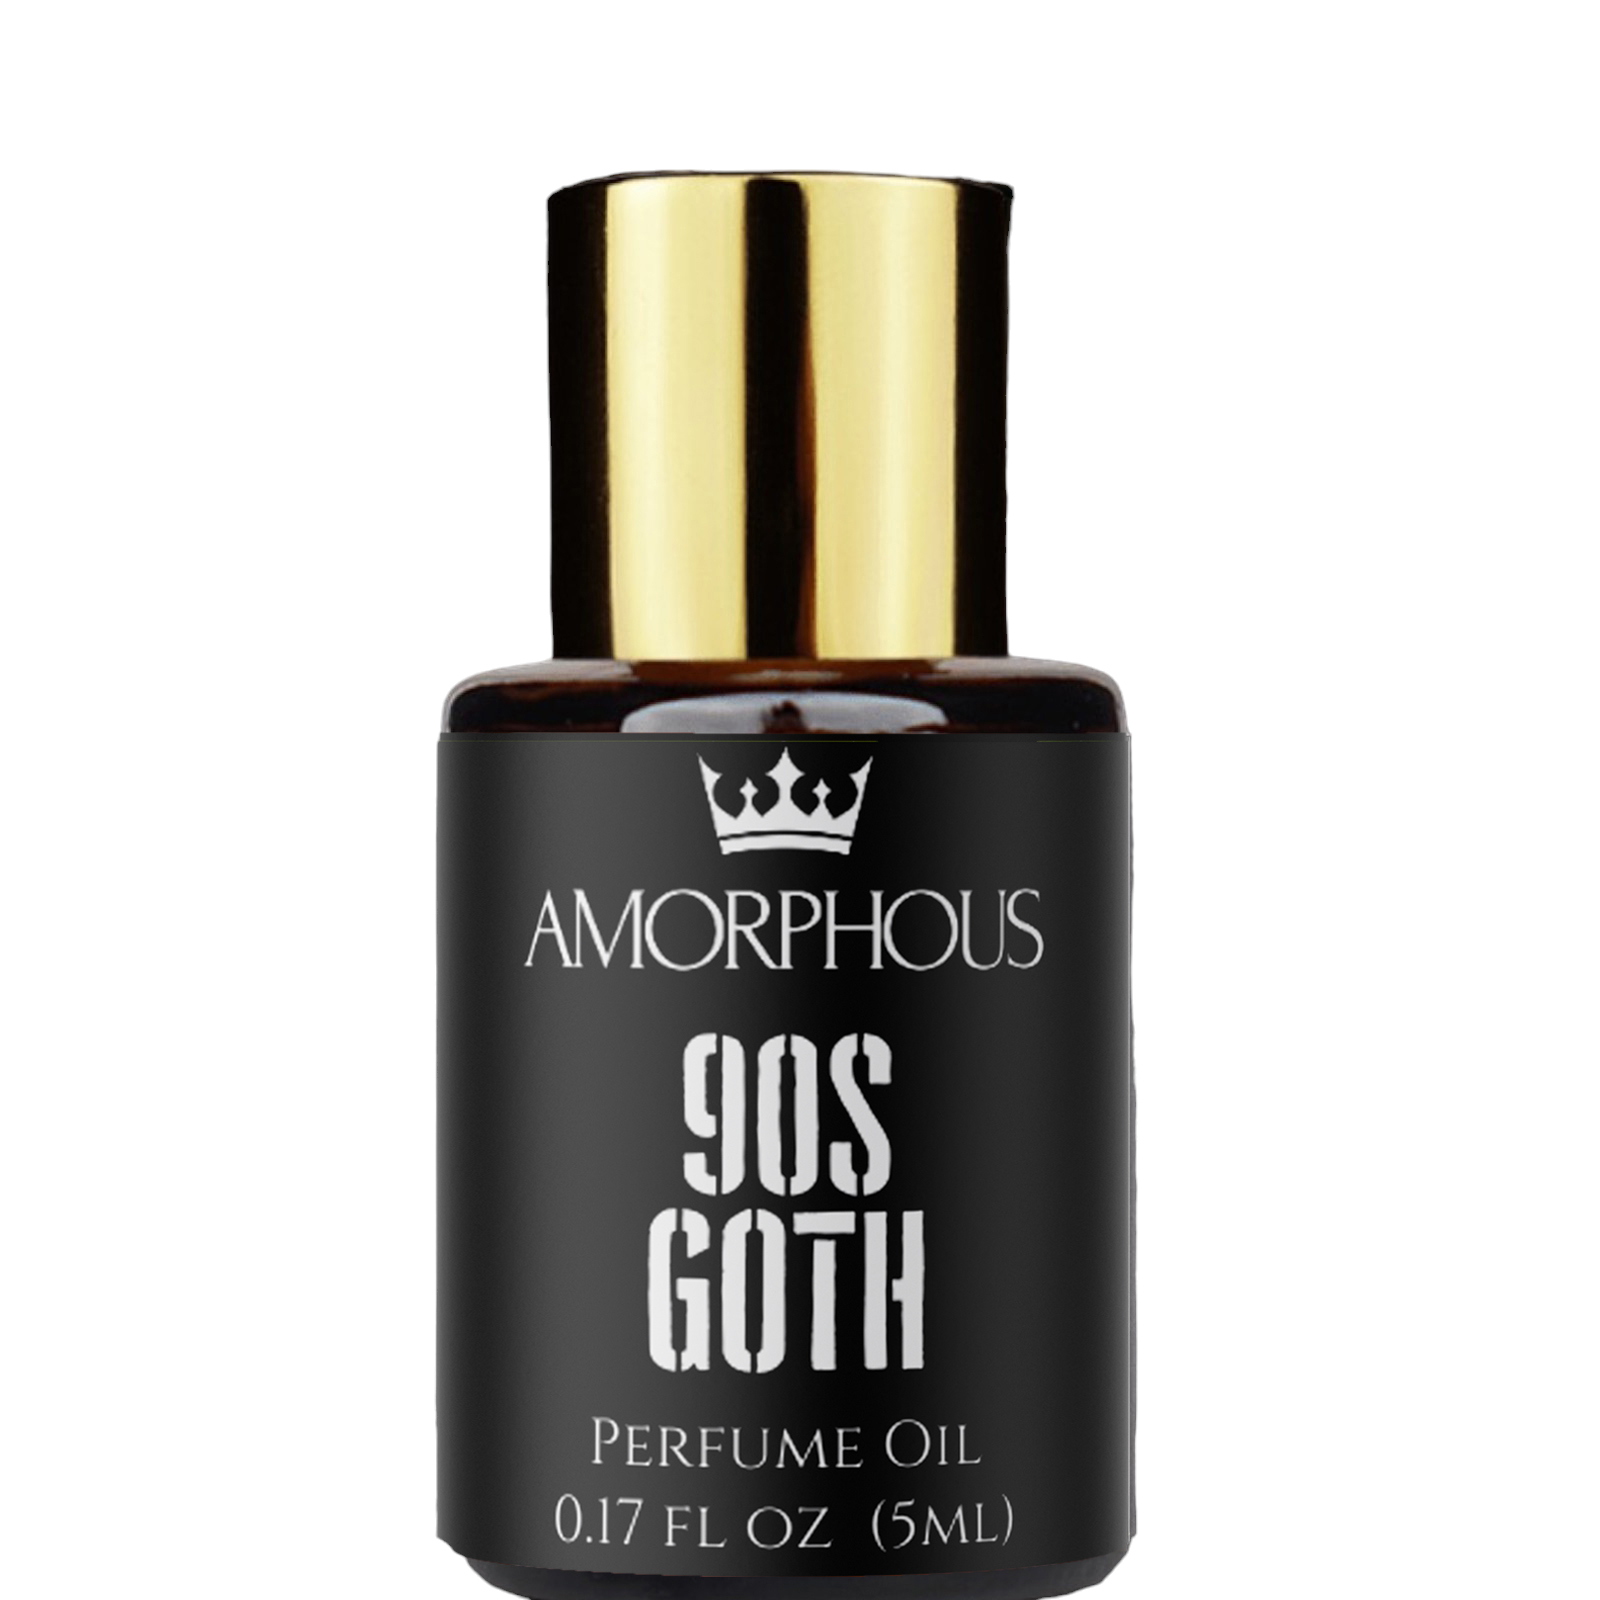 goth perfume oil